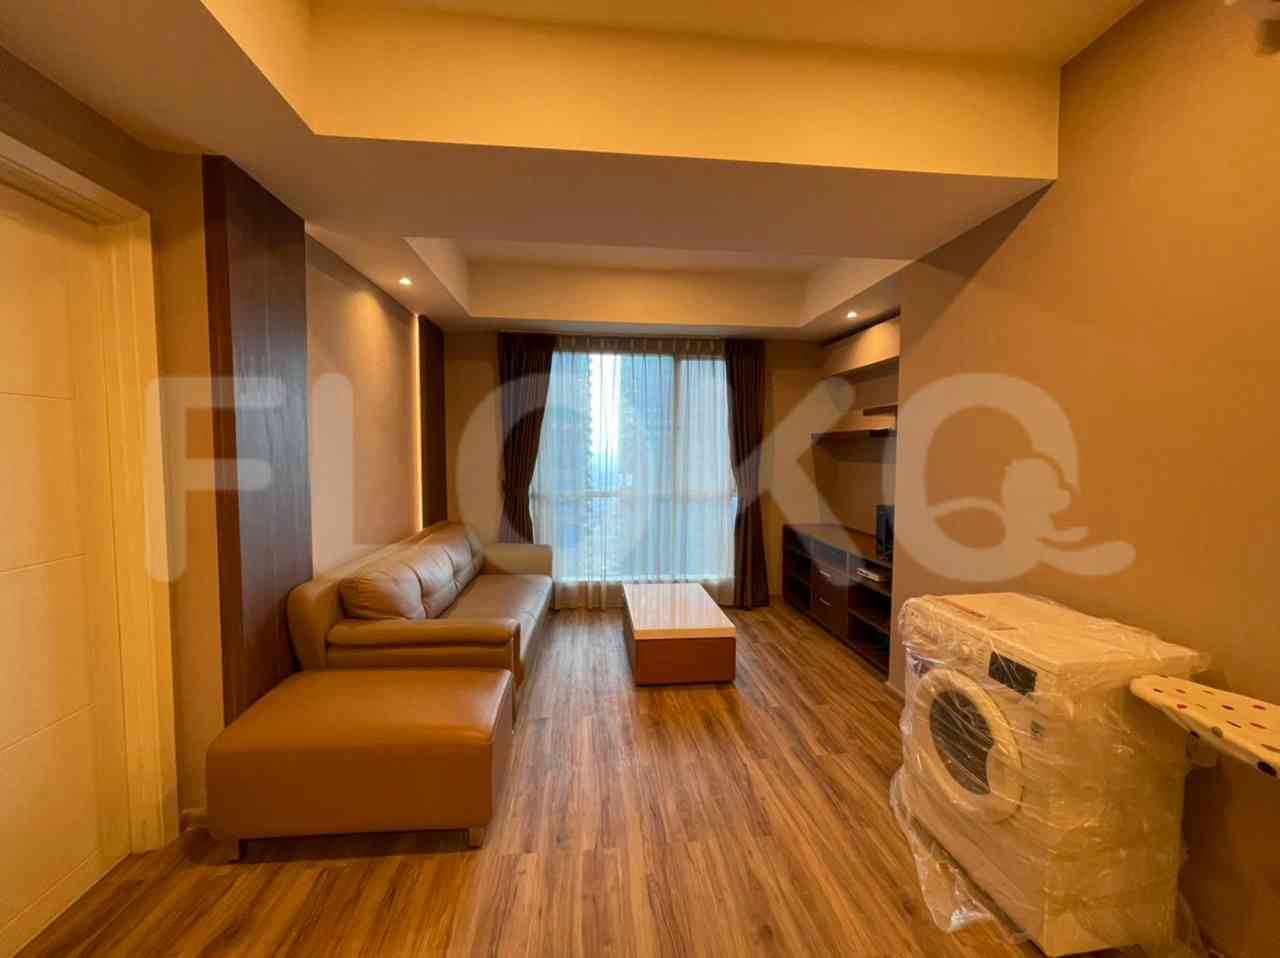 3 Bedroom on 17th Floor for Rent in Casa Grande - ftefa9 4